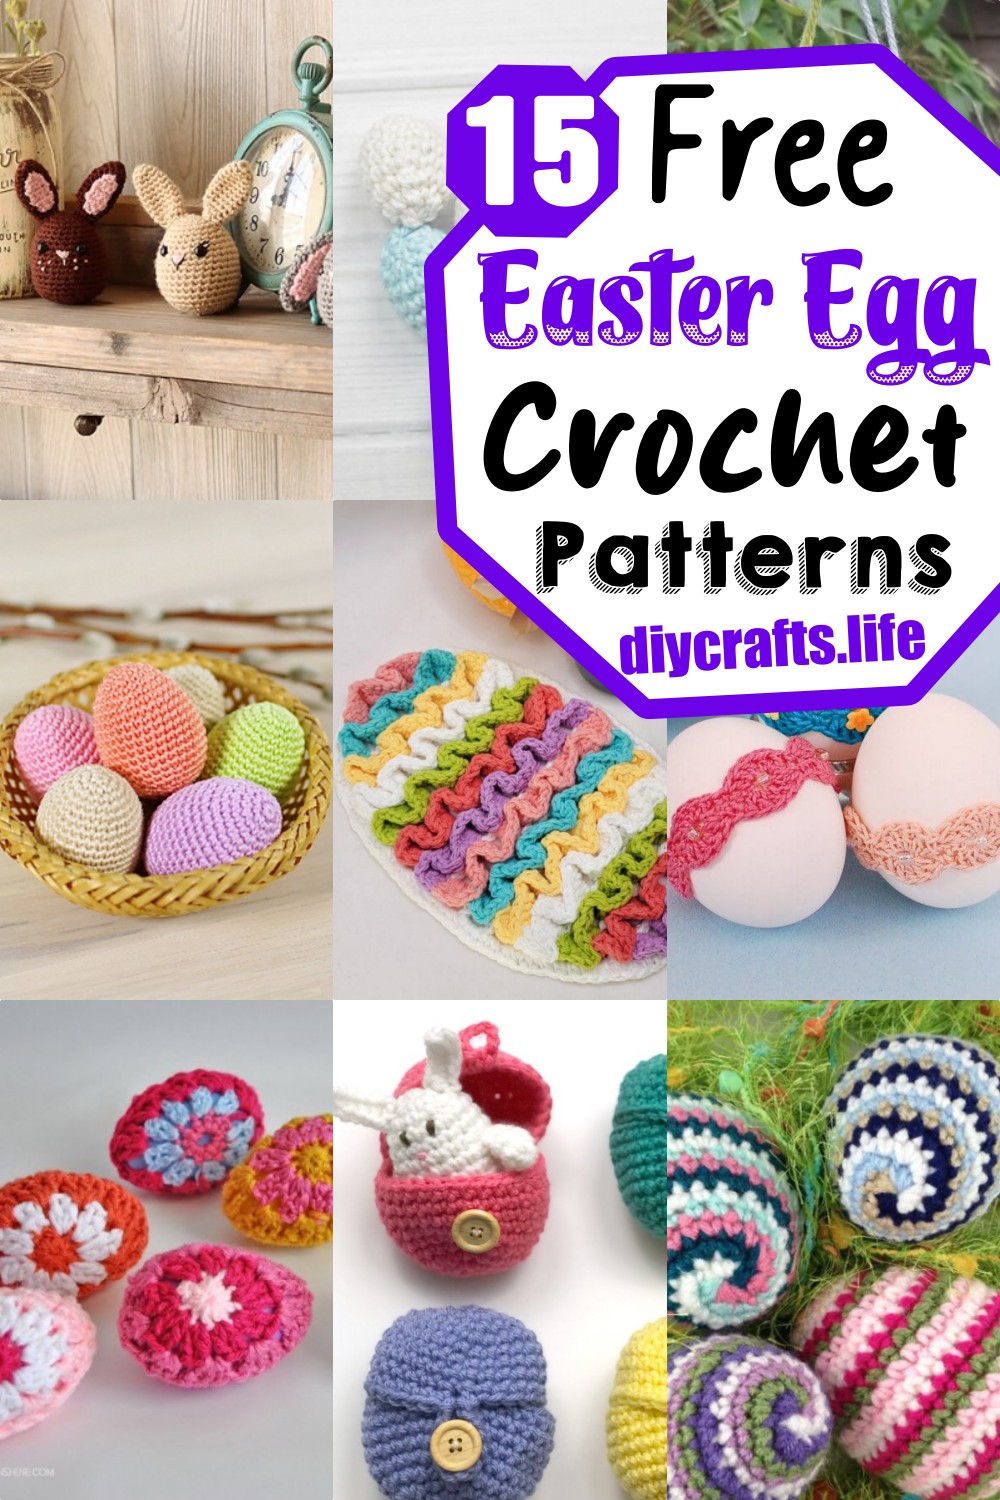 Crochet Easter Egg Patterns Free